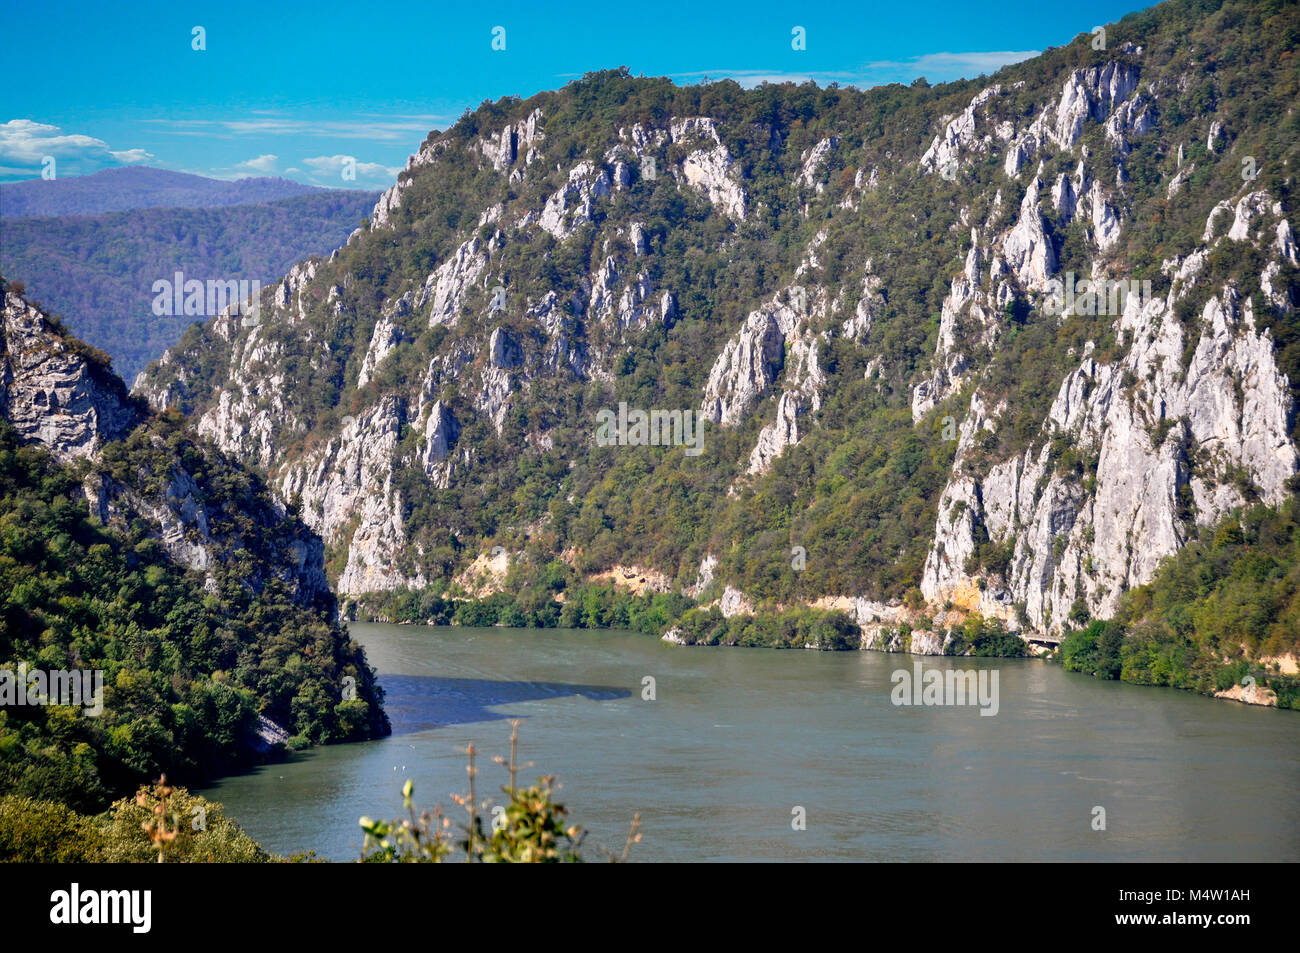 Danube river near the Serbian city of Donji Milanovac Stock Photo